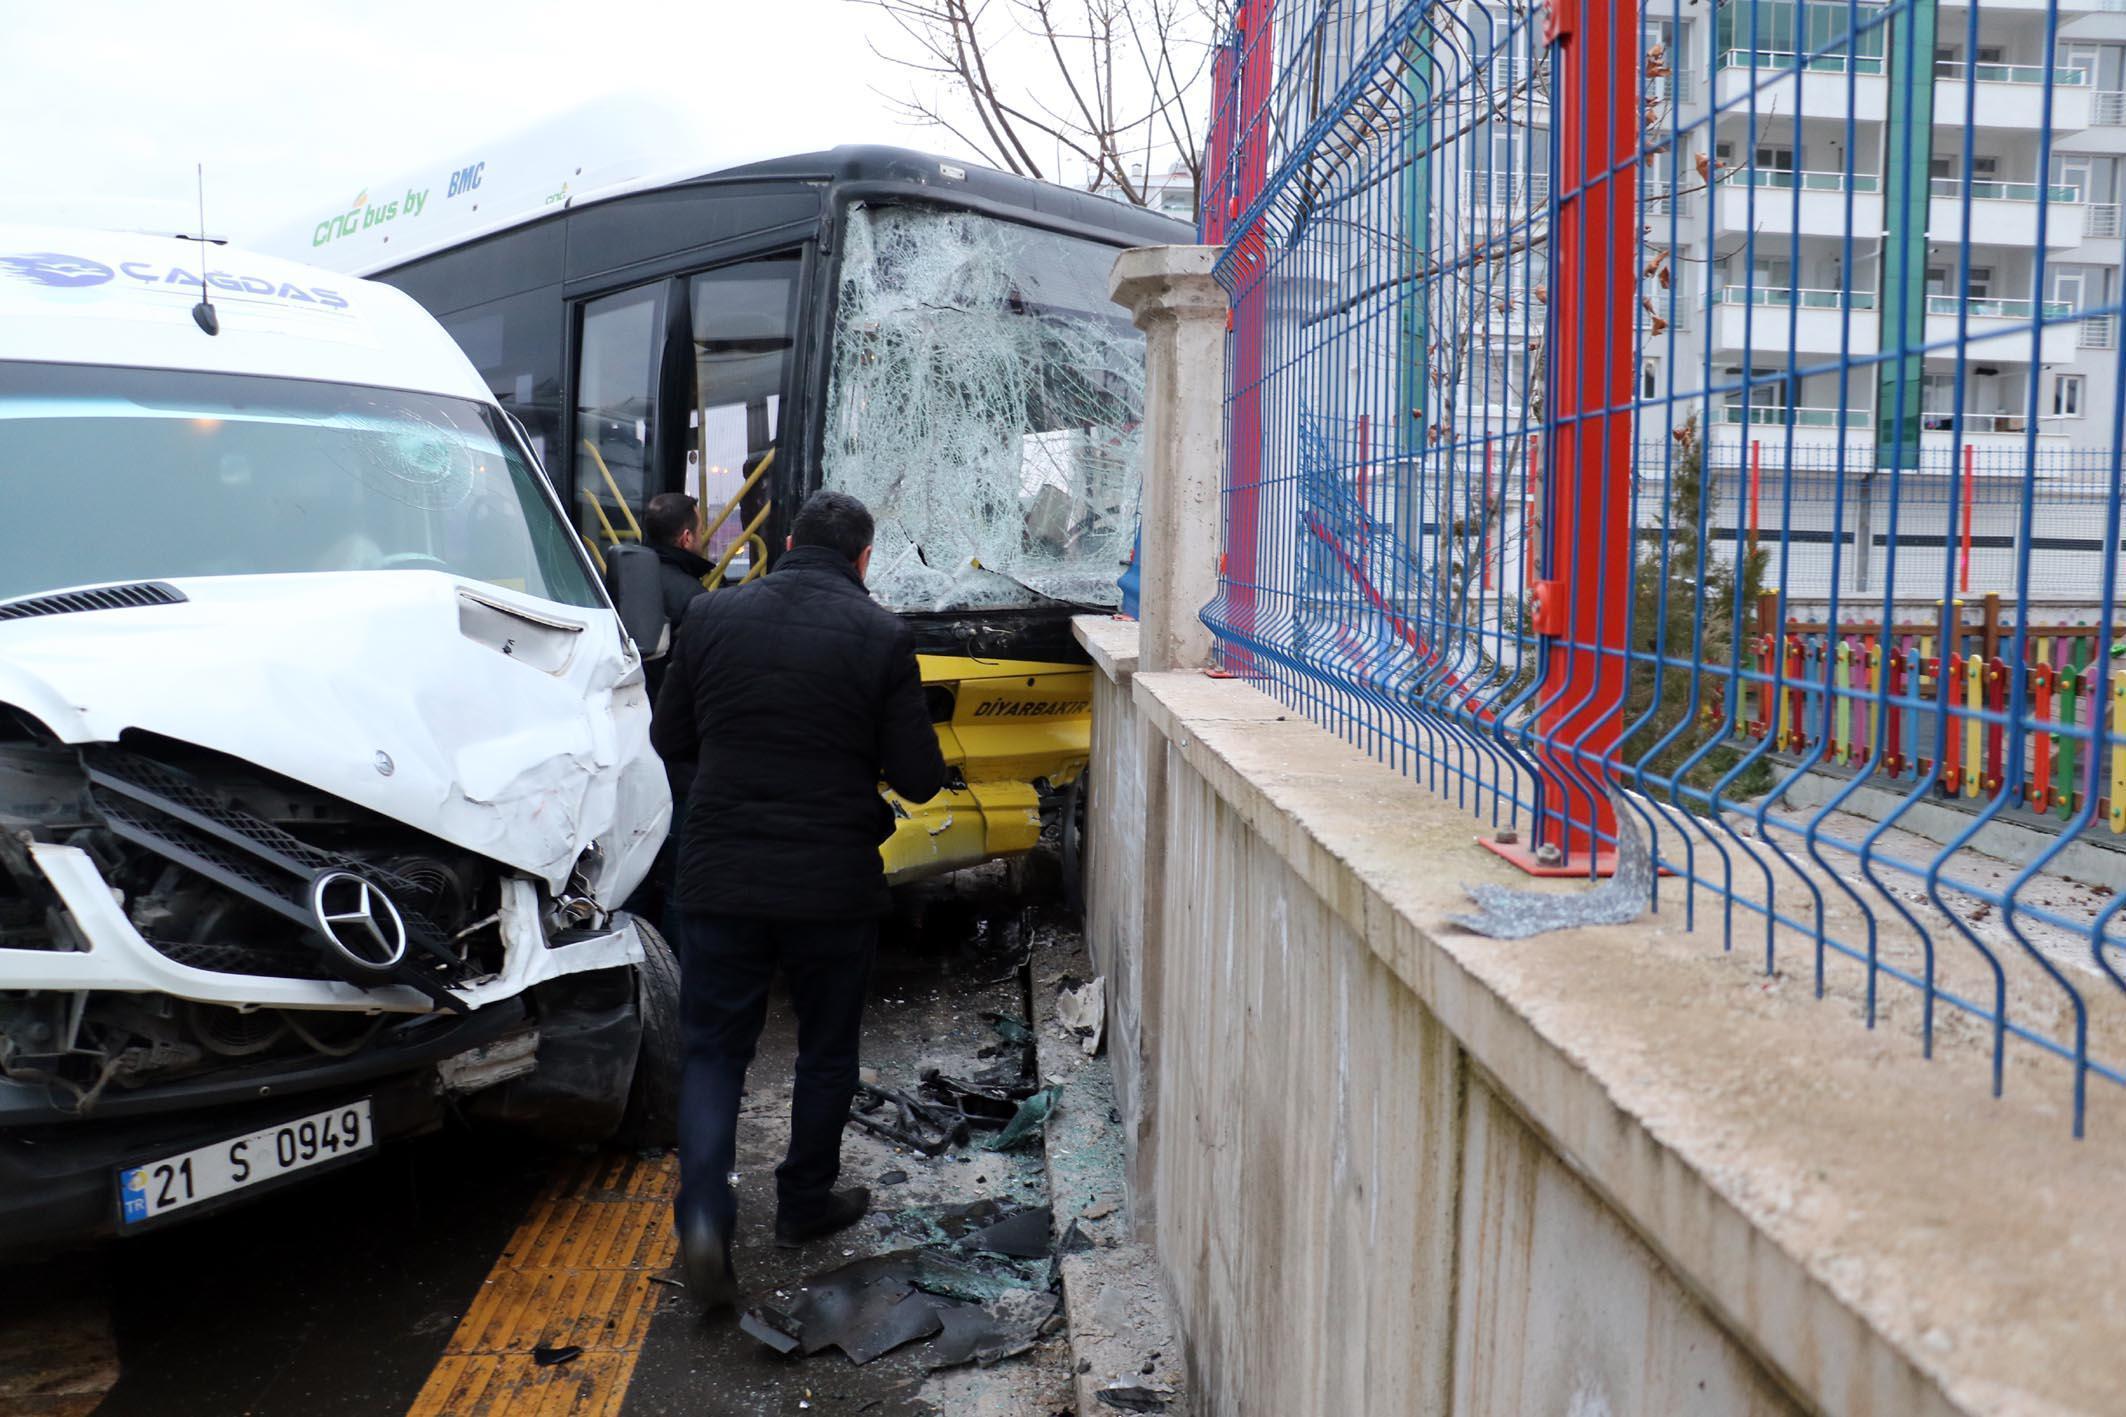 Diyarbakırda otobüs ile minibüs çarpıştı 13 kişi yaralandı